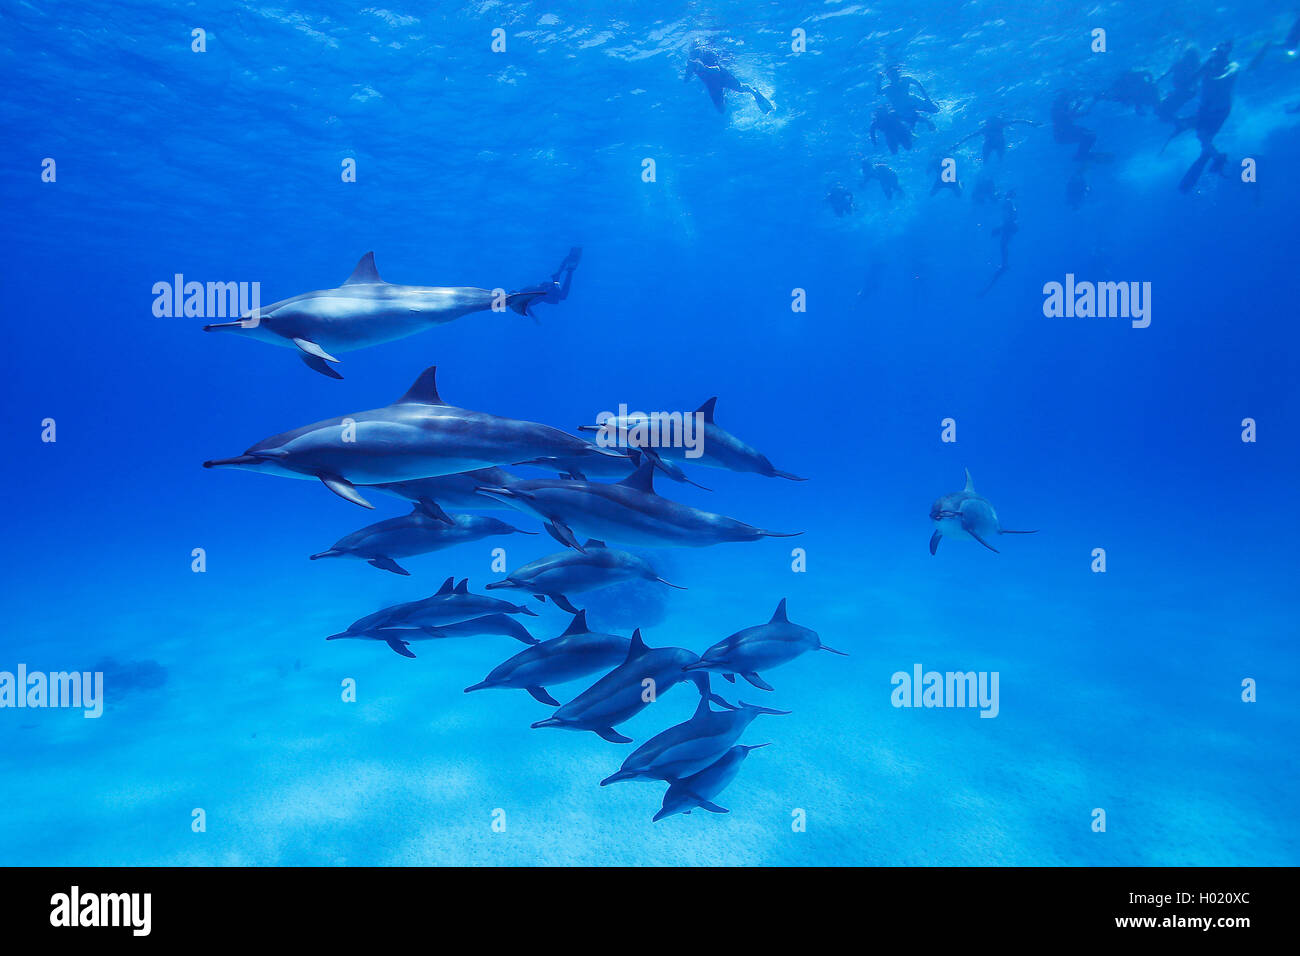 Delfin, Blauweisser Blau-Weisser Delfin, Blau-Weisser Delphin, Blauweisser Delphin, Streifendelfin, Streifendelphin (Stenella co Foto de stock